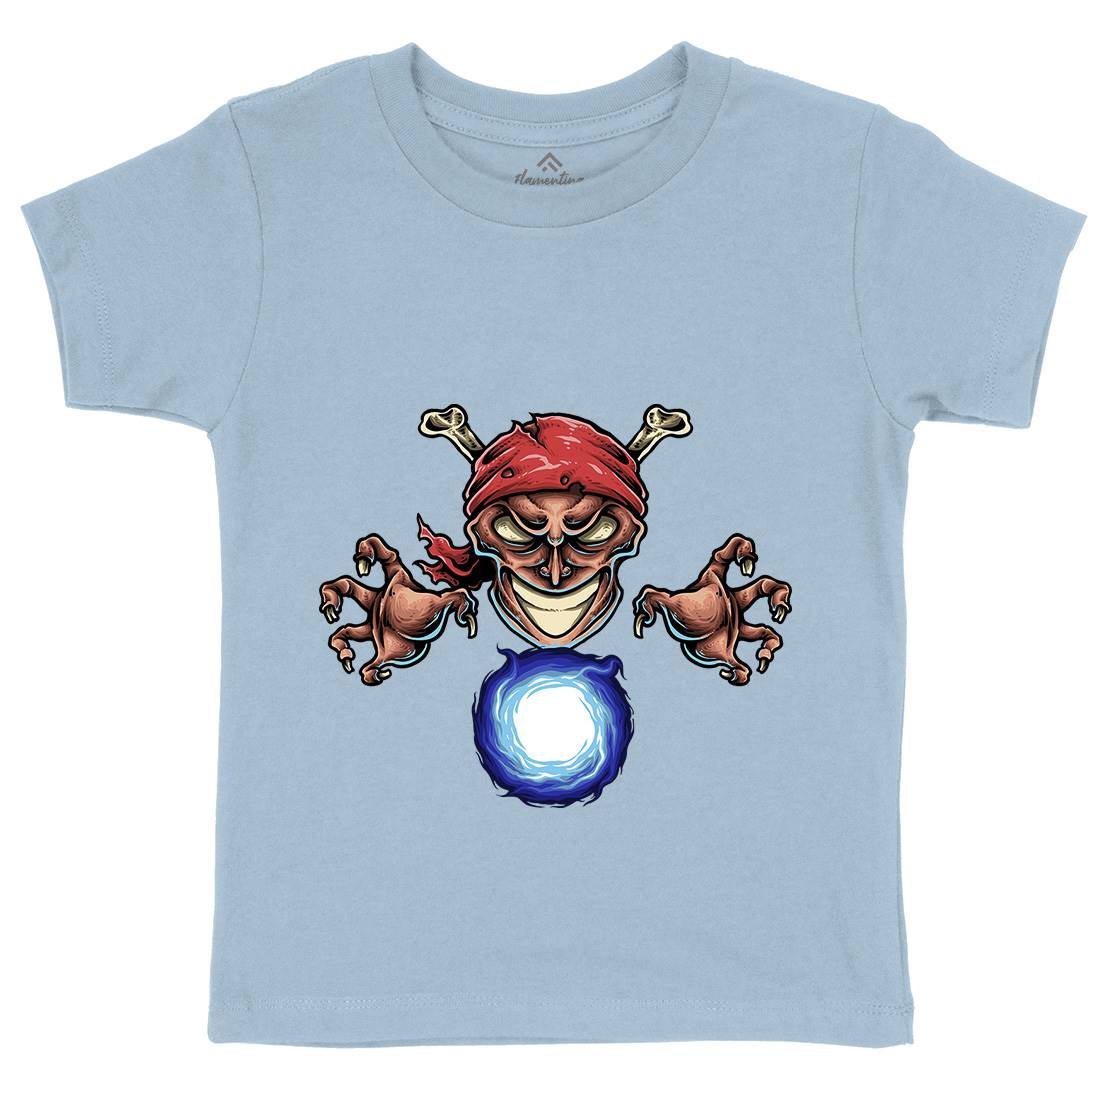 Pirate Magician Kids Crew Neck T-Shirt Navy A451